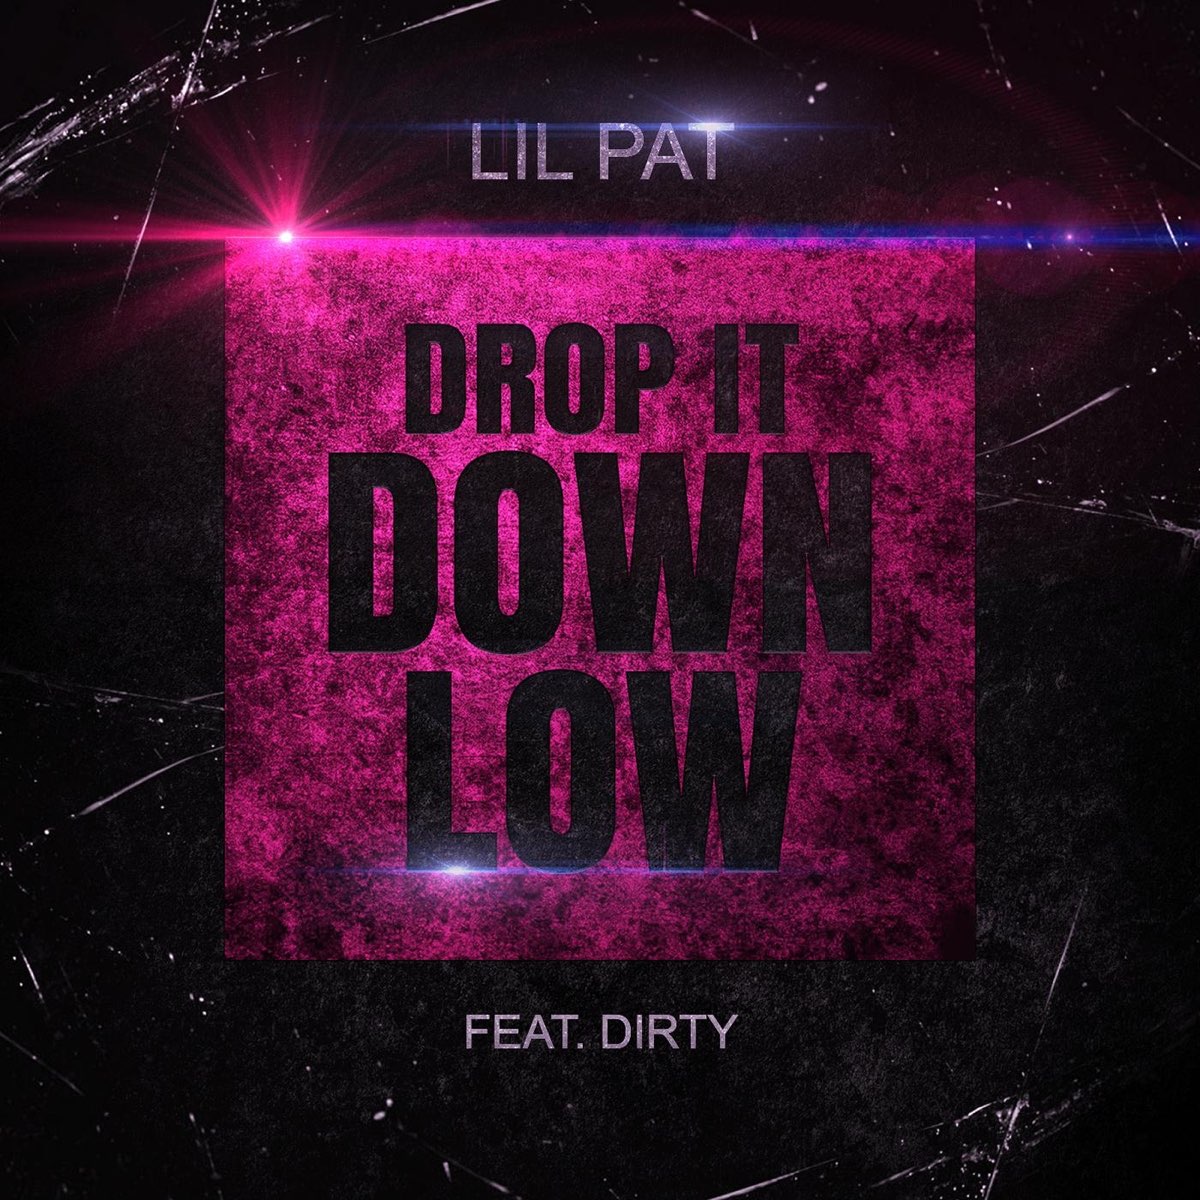 Дроп музыка слушать. Lil Pat. LUXEMUSIC proжект - Luxury Life. Drop it песня. Песня Drop it down.